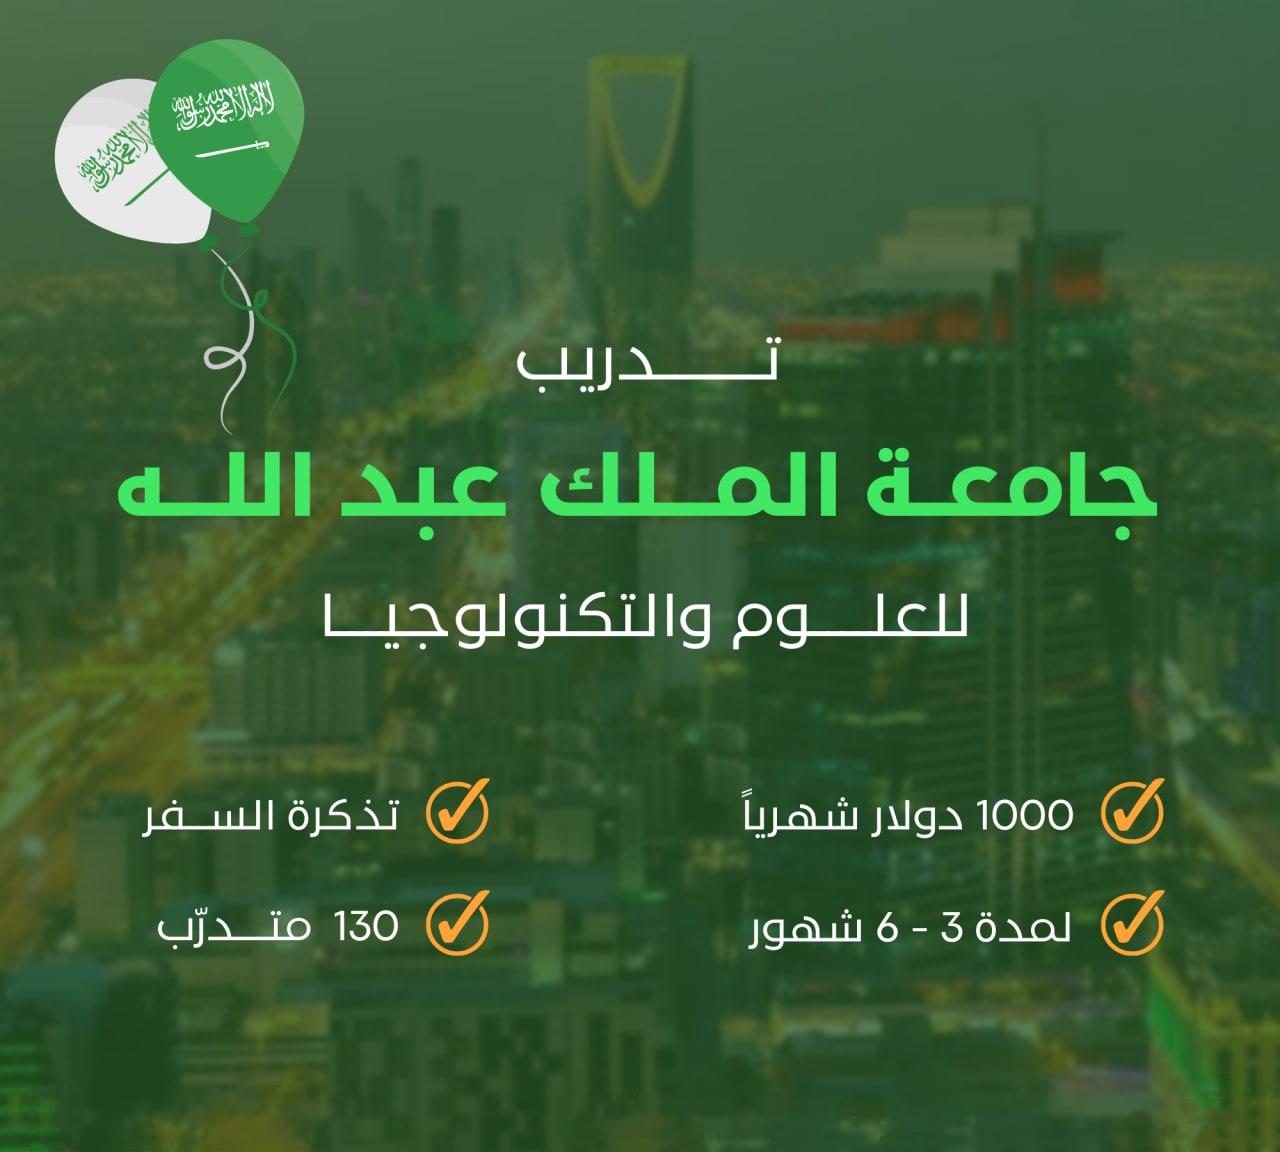 تدريب جامعة الملك عبدالله KAUST في المملكة العربية السعودية (ممول بالكامل)